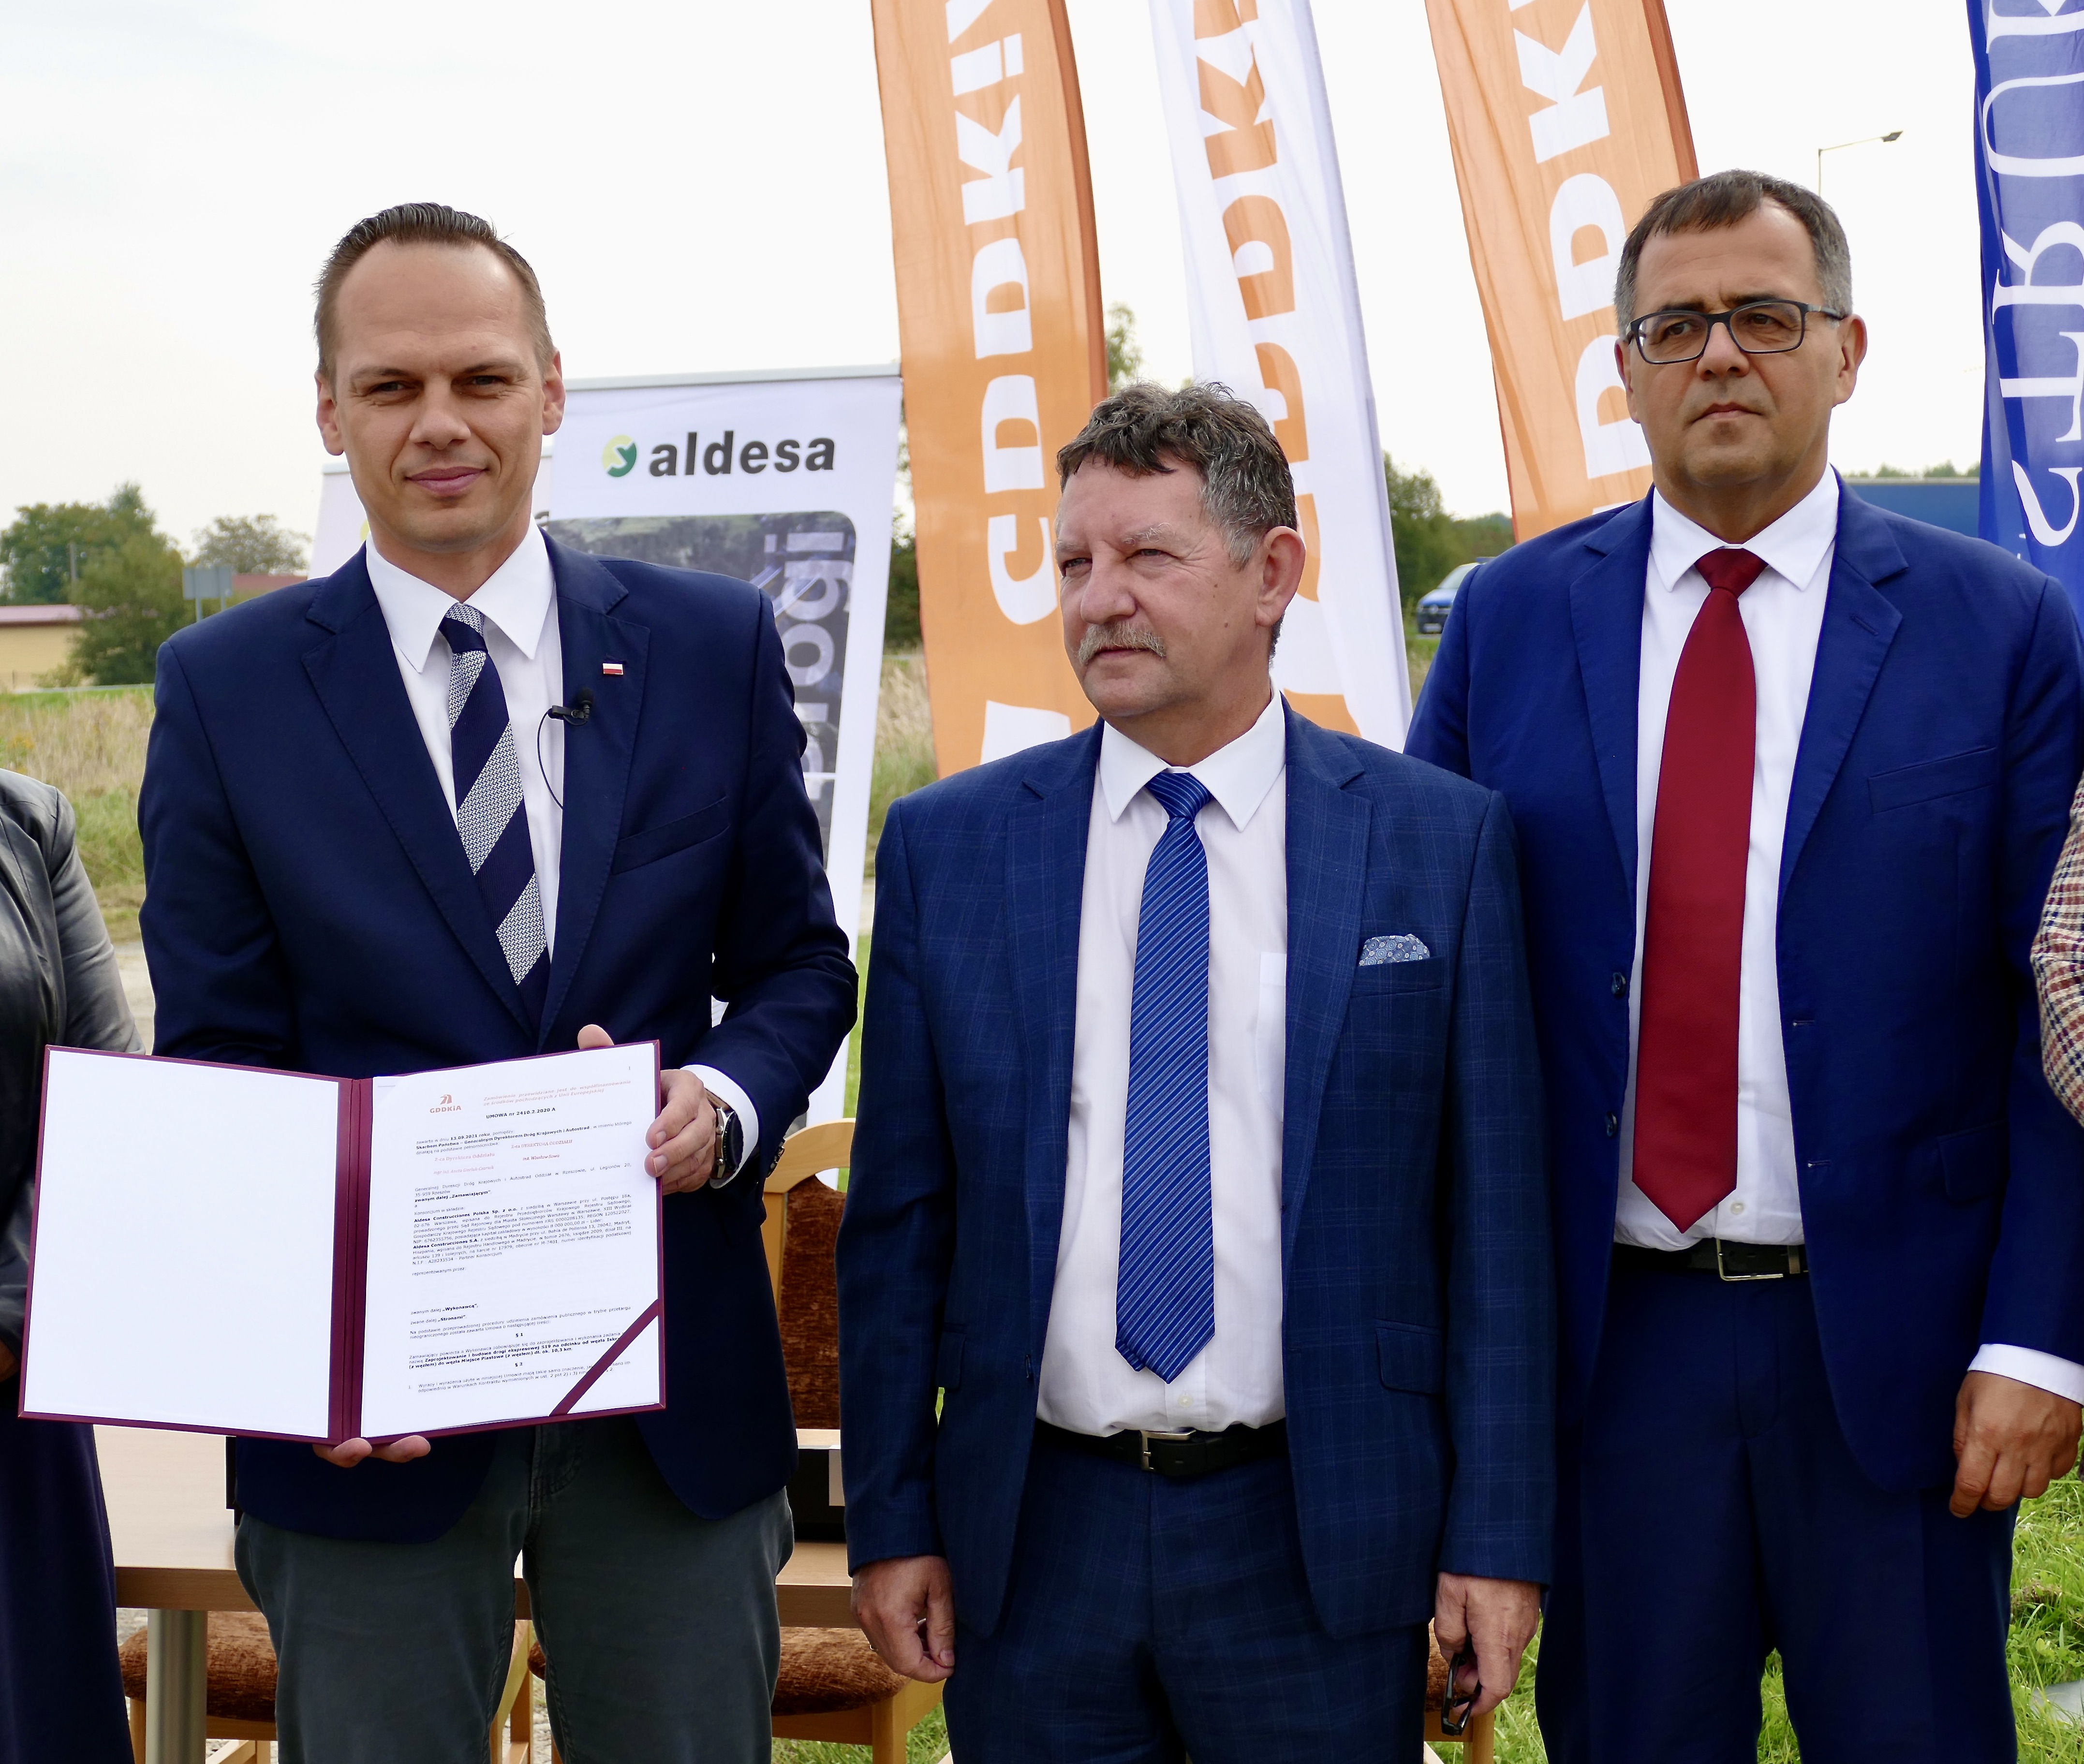 Spoločnosť Aldesa podpísala zmluvu s poľským Generálnym riaditeľstvom pre národné cesty a diaľnice na výstavbu rýchlostnej cesty S19 medzi obcami Iskrzynia a Miejsce Piastowe